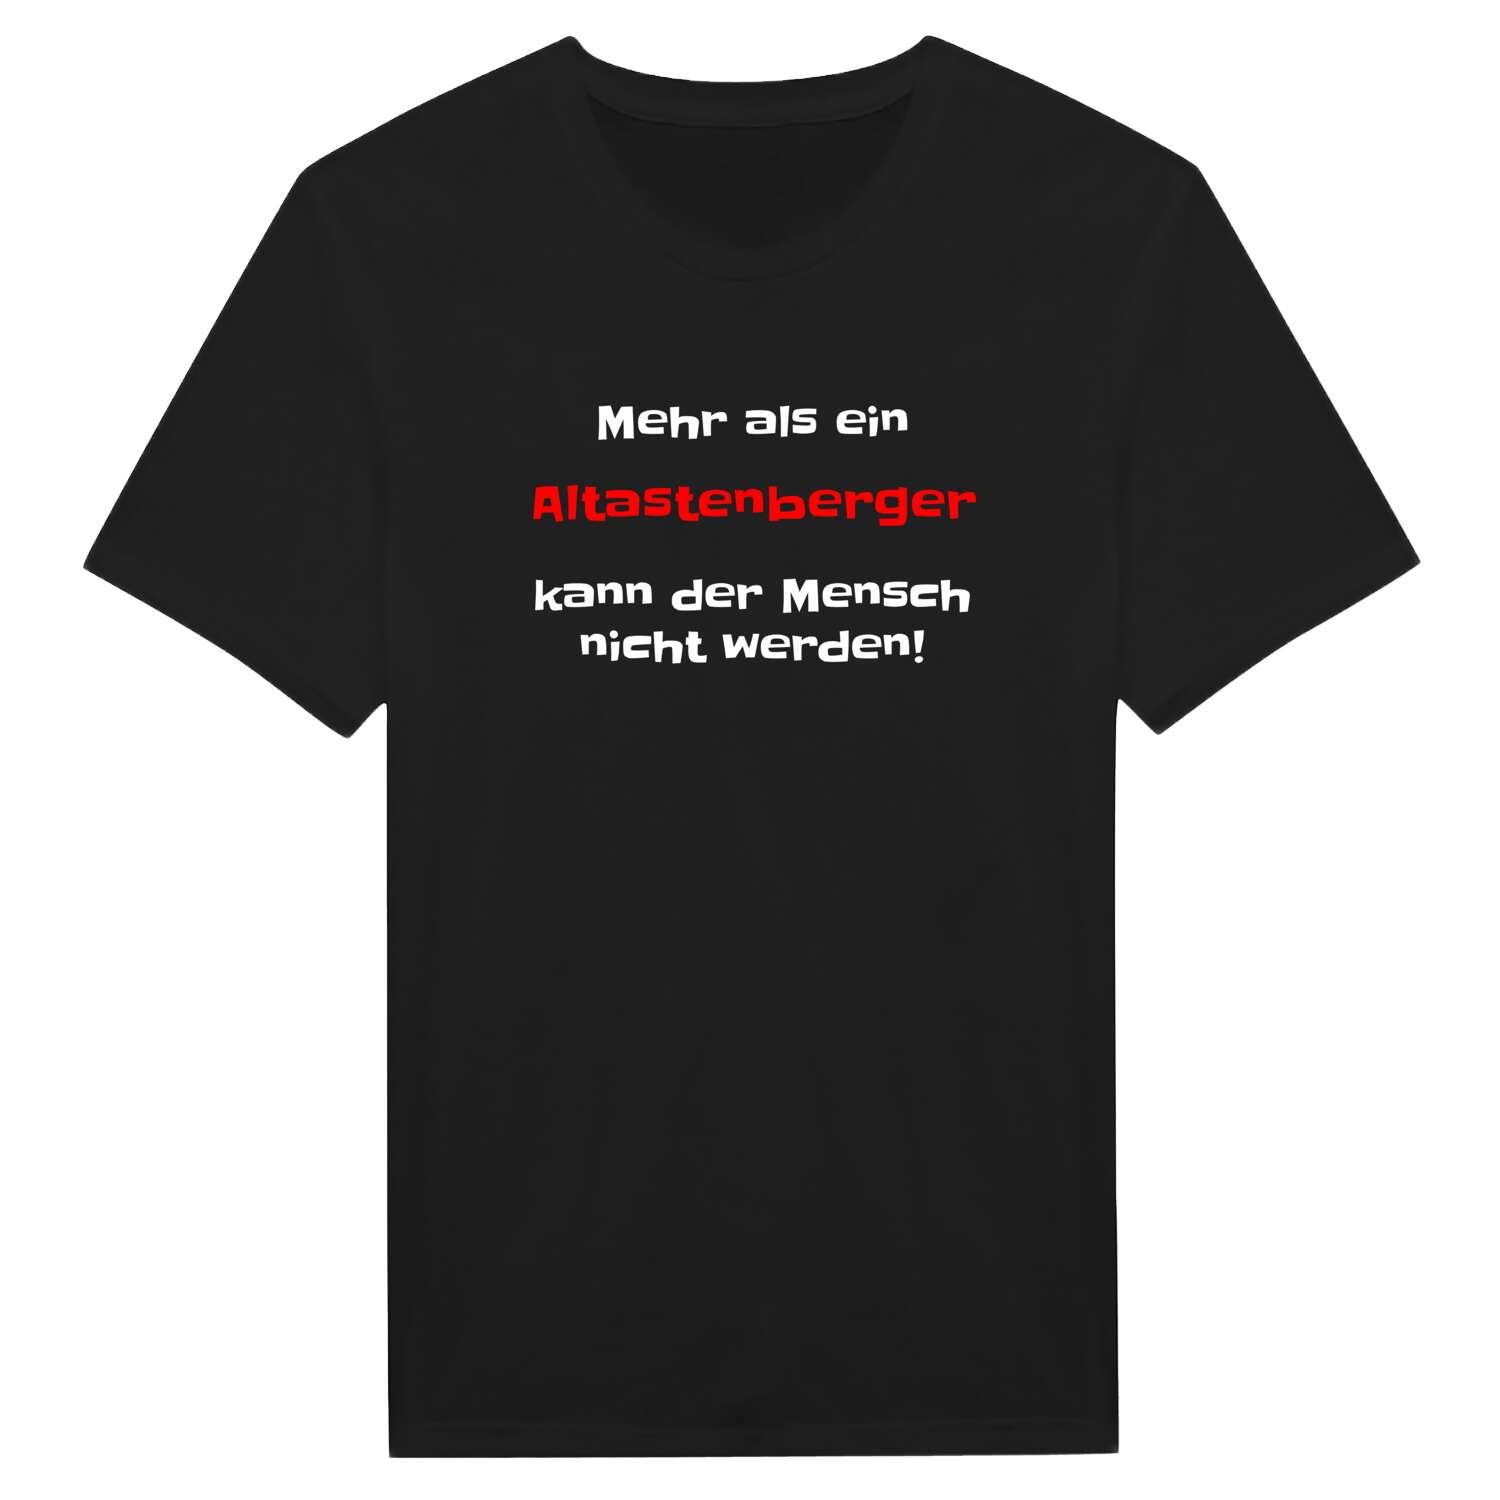 Altastenberg T-Shirt »Mehr als ein«